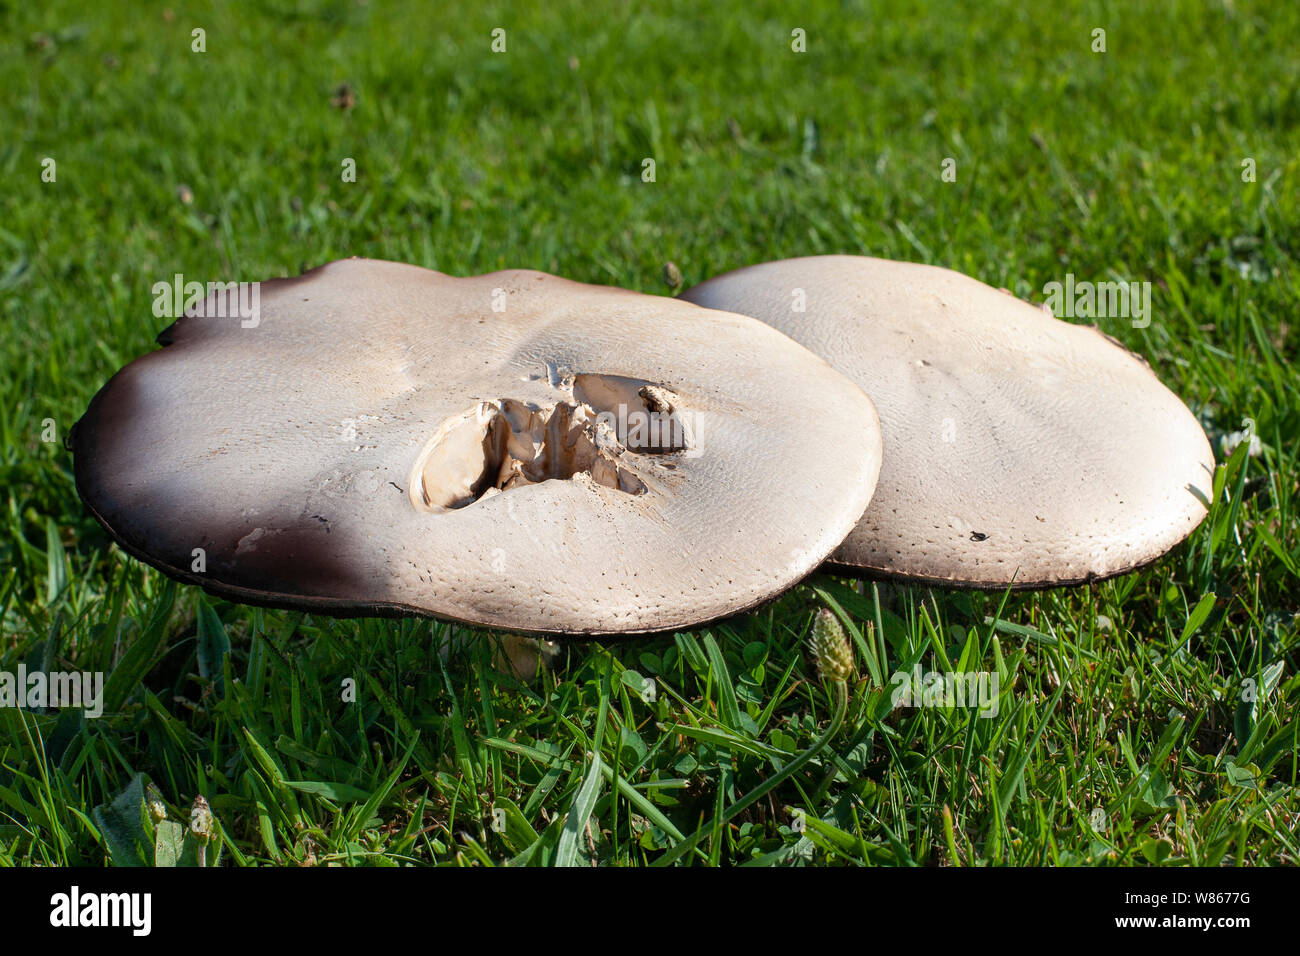 Les champignons poussant sur un jardin pelouse Banque D'Images